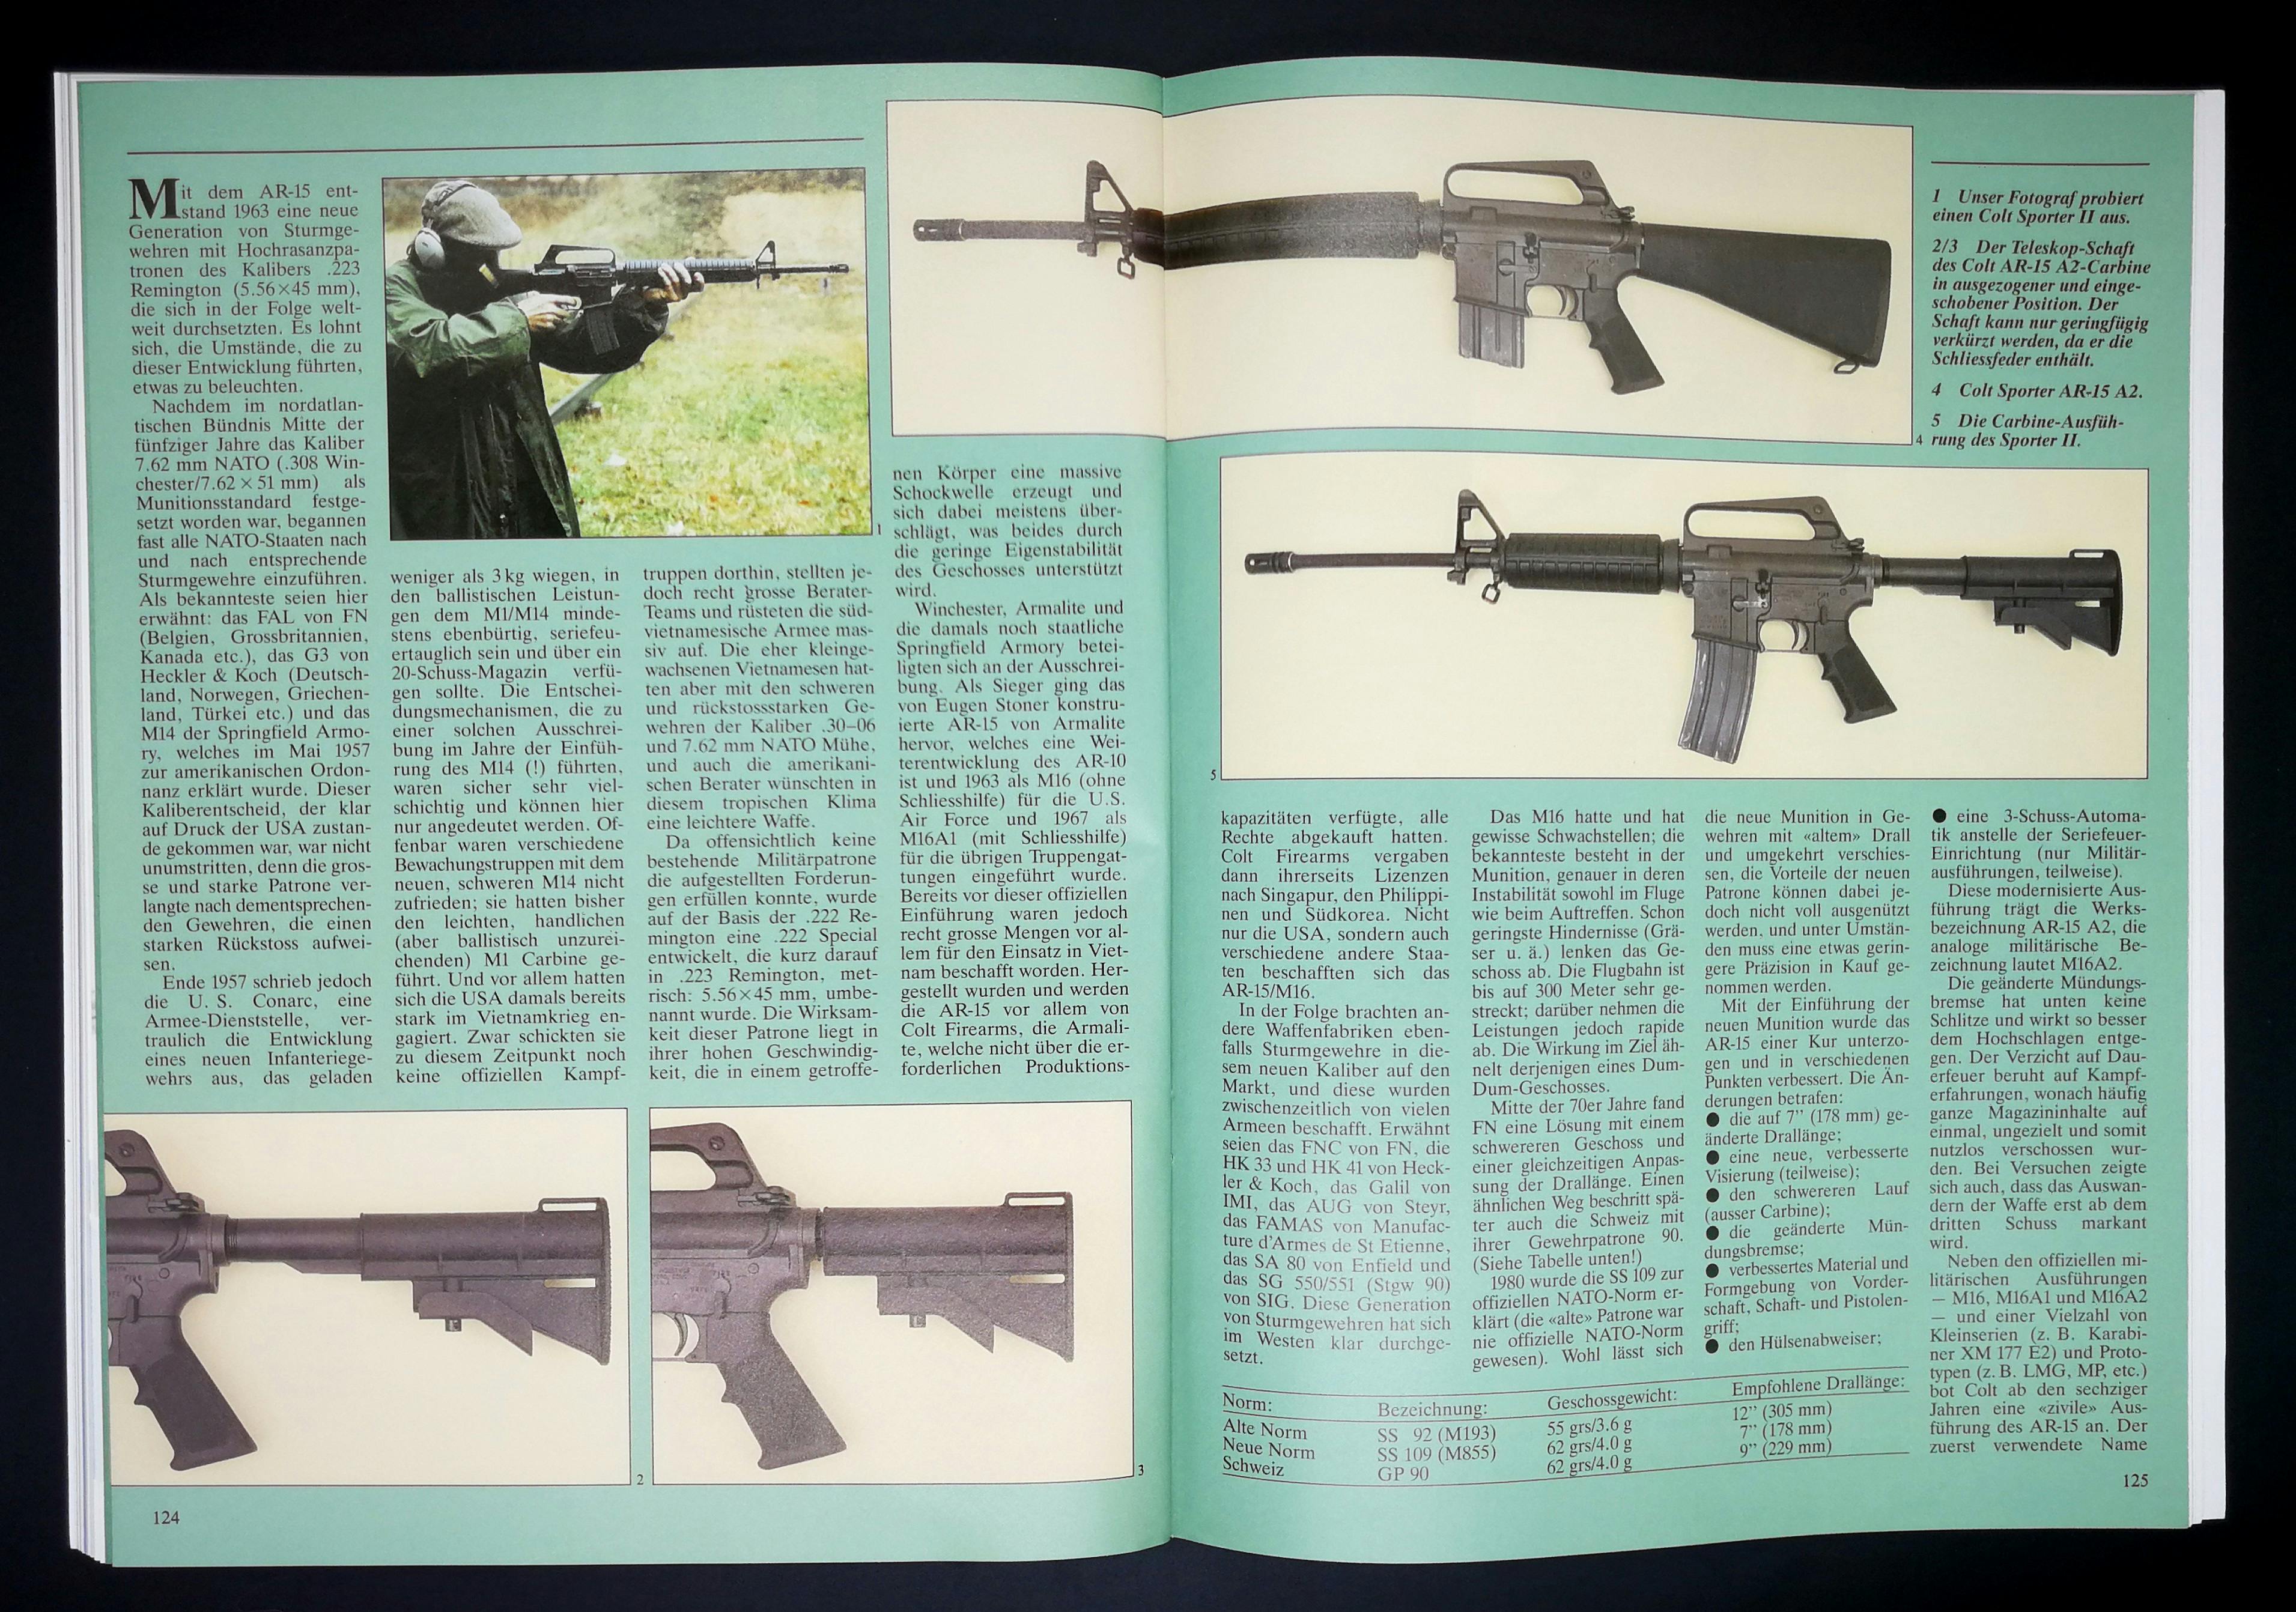 Sportliche AR-15 waren schon vor 30 Jahren angesagt. Mir gefällt ja die Ausführung am Besten, die optisch möglichst nahe am M16 ist.
